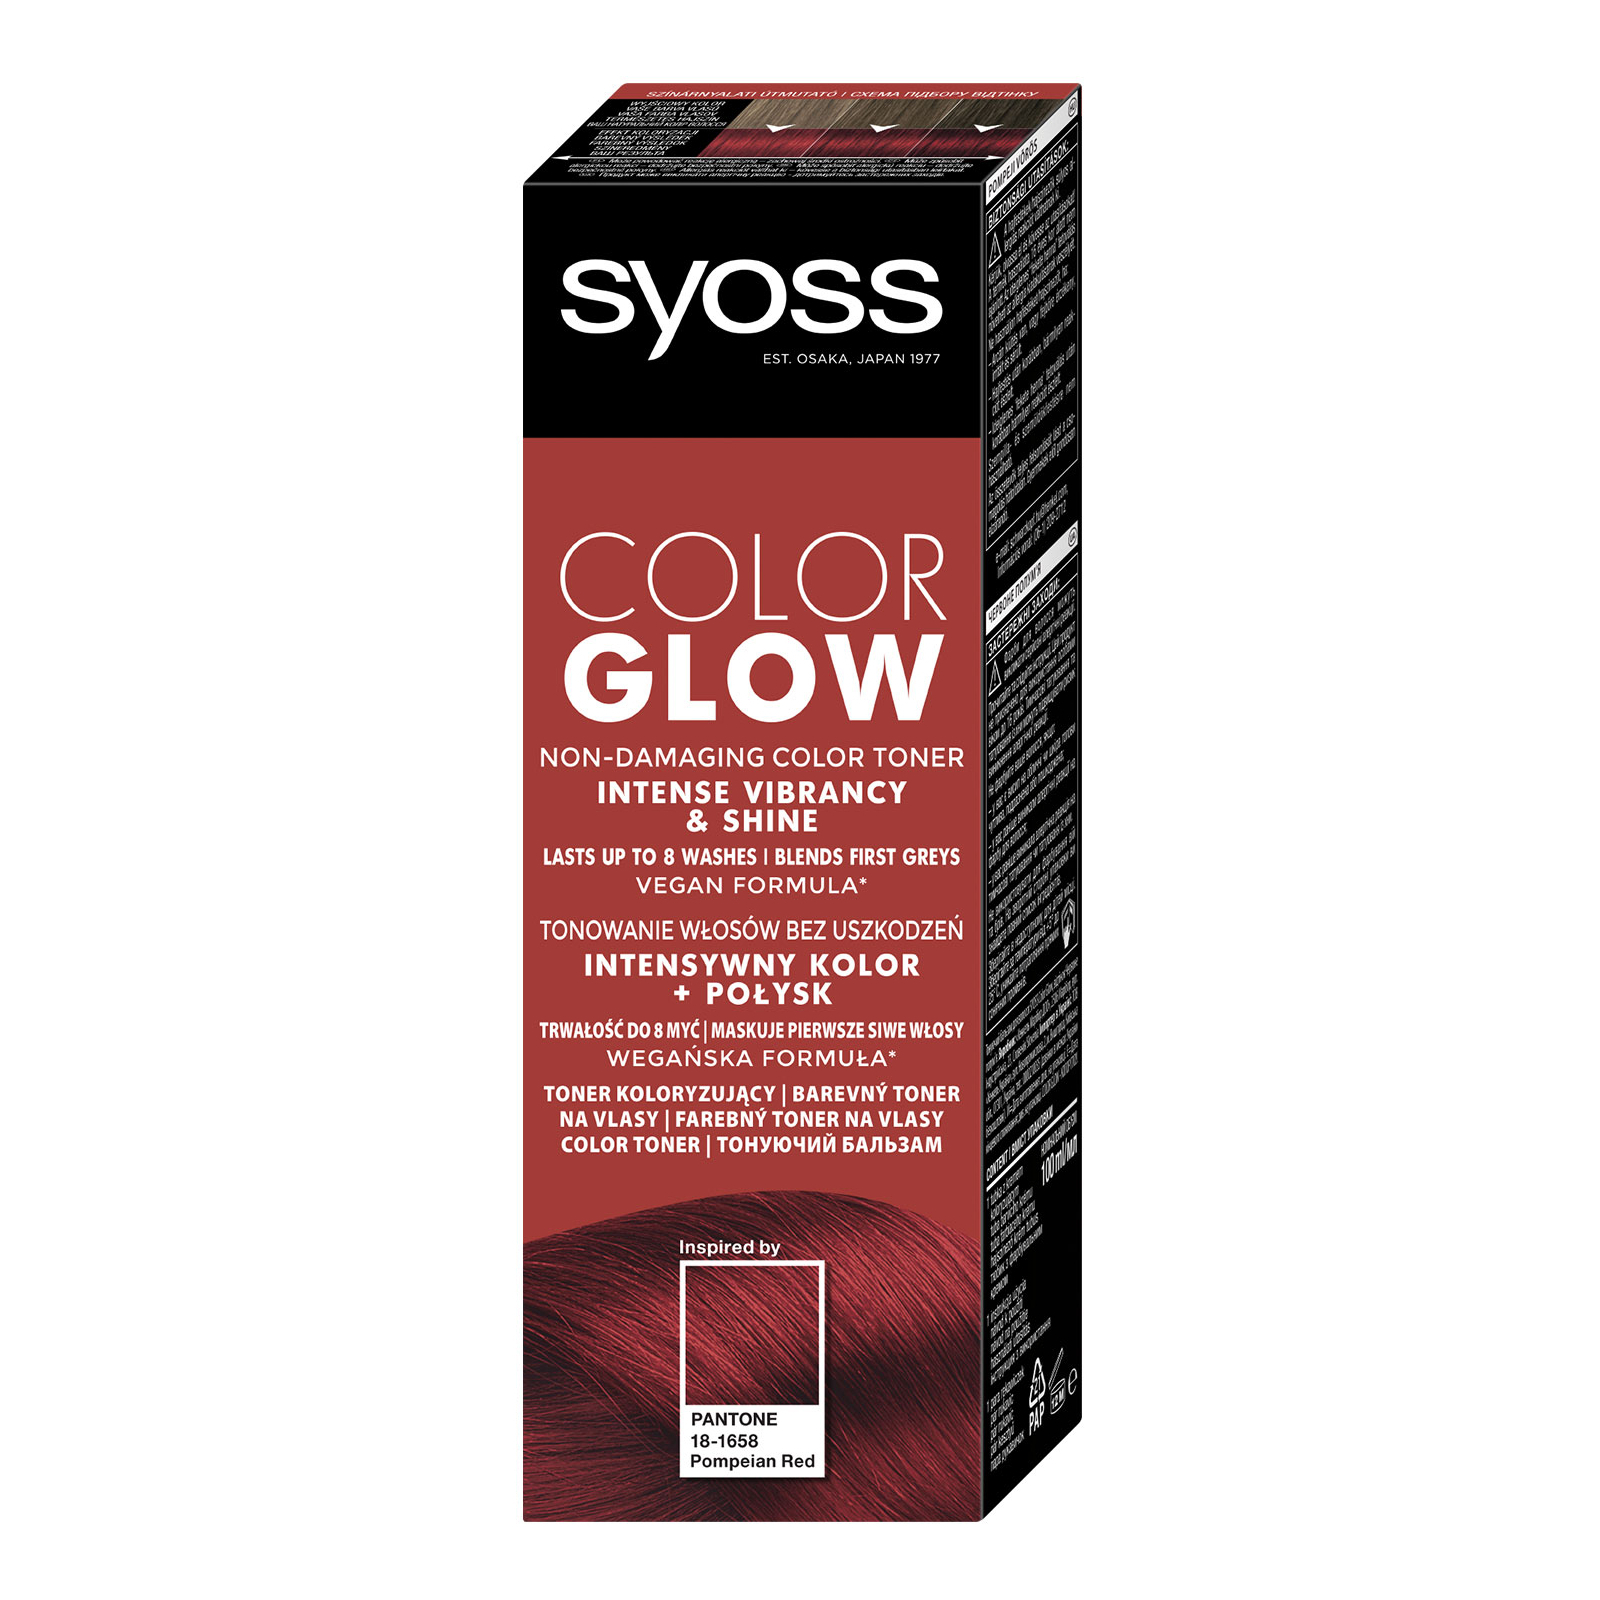 Оттеночный бальзам Syoss Color Glow Deep Brunette - Насыщенный Каштановый 100 мл (9000101679403) изображение 2